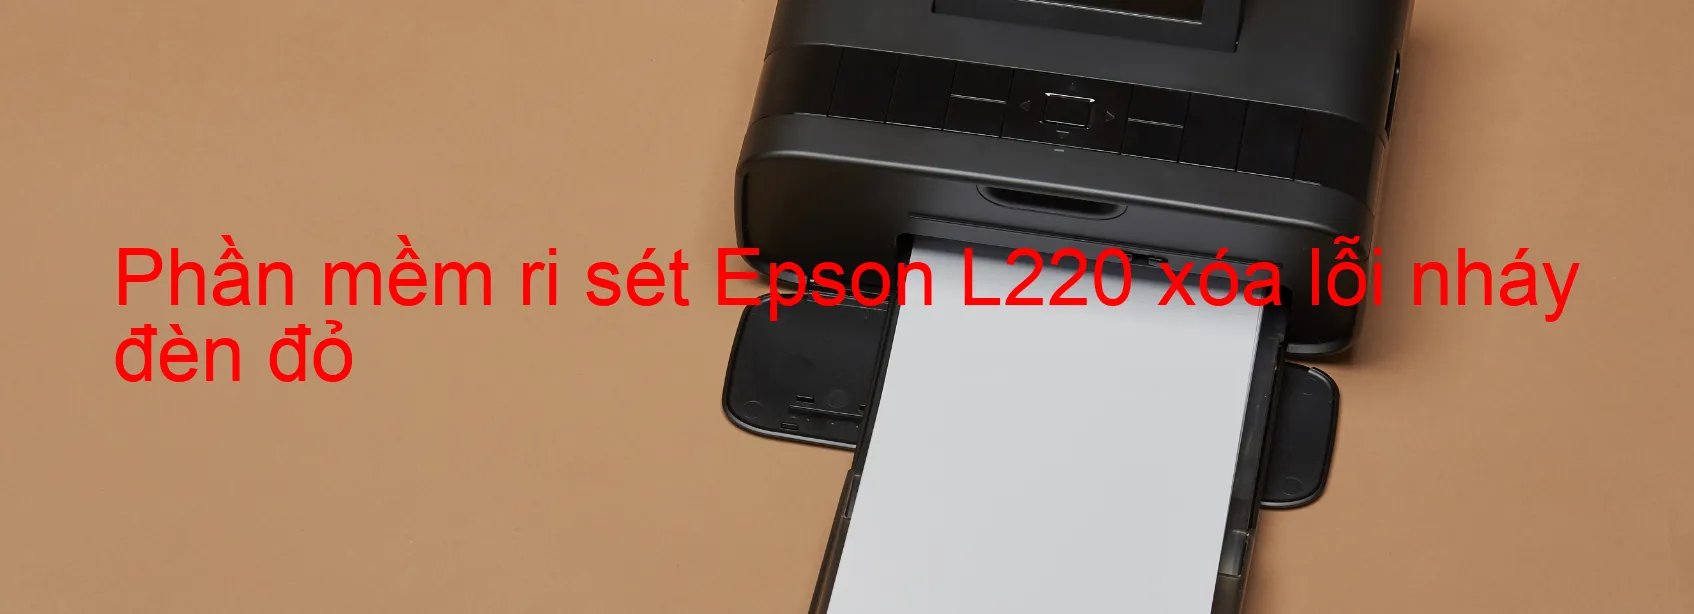 Phần mềm reset Epson L220 xóa lỗi nháy đèn đỏ